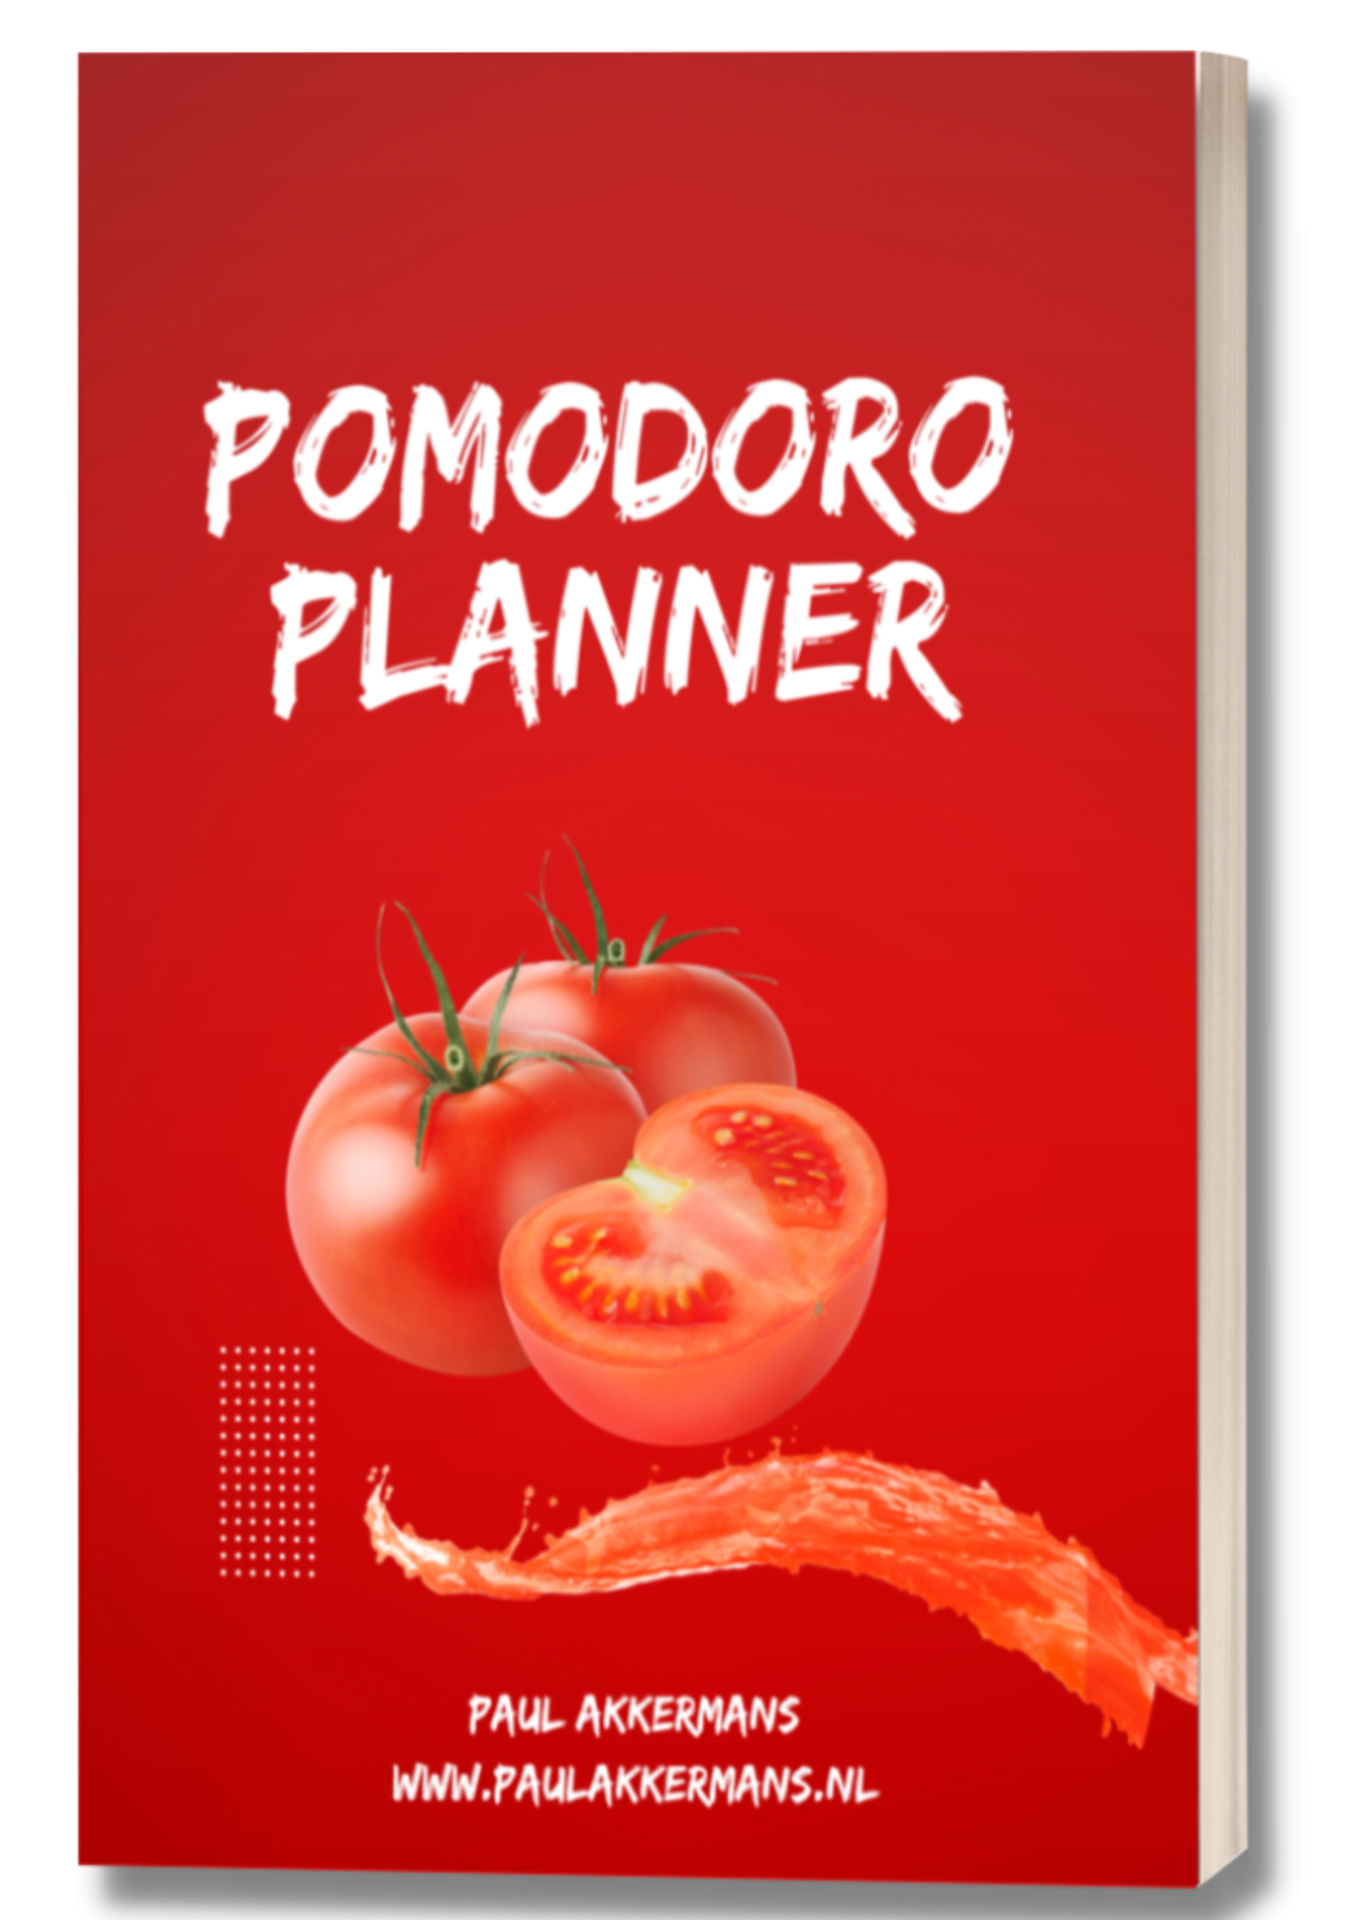 Cover pomodoro planner Paul Akkermans